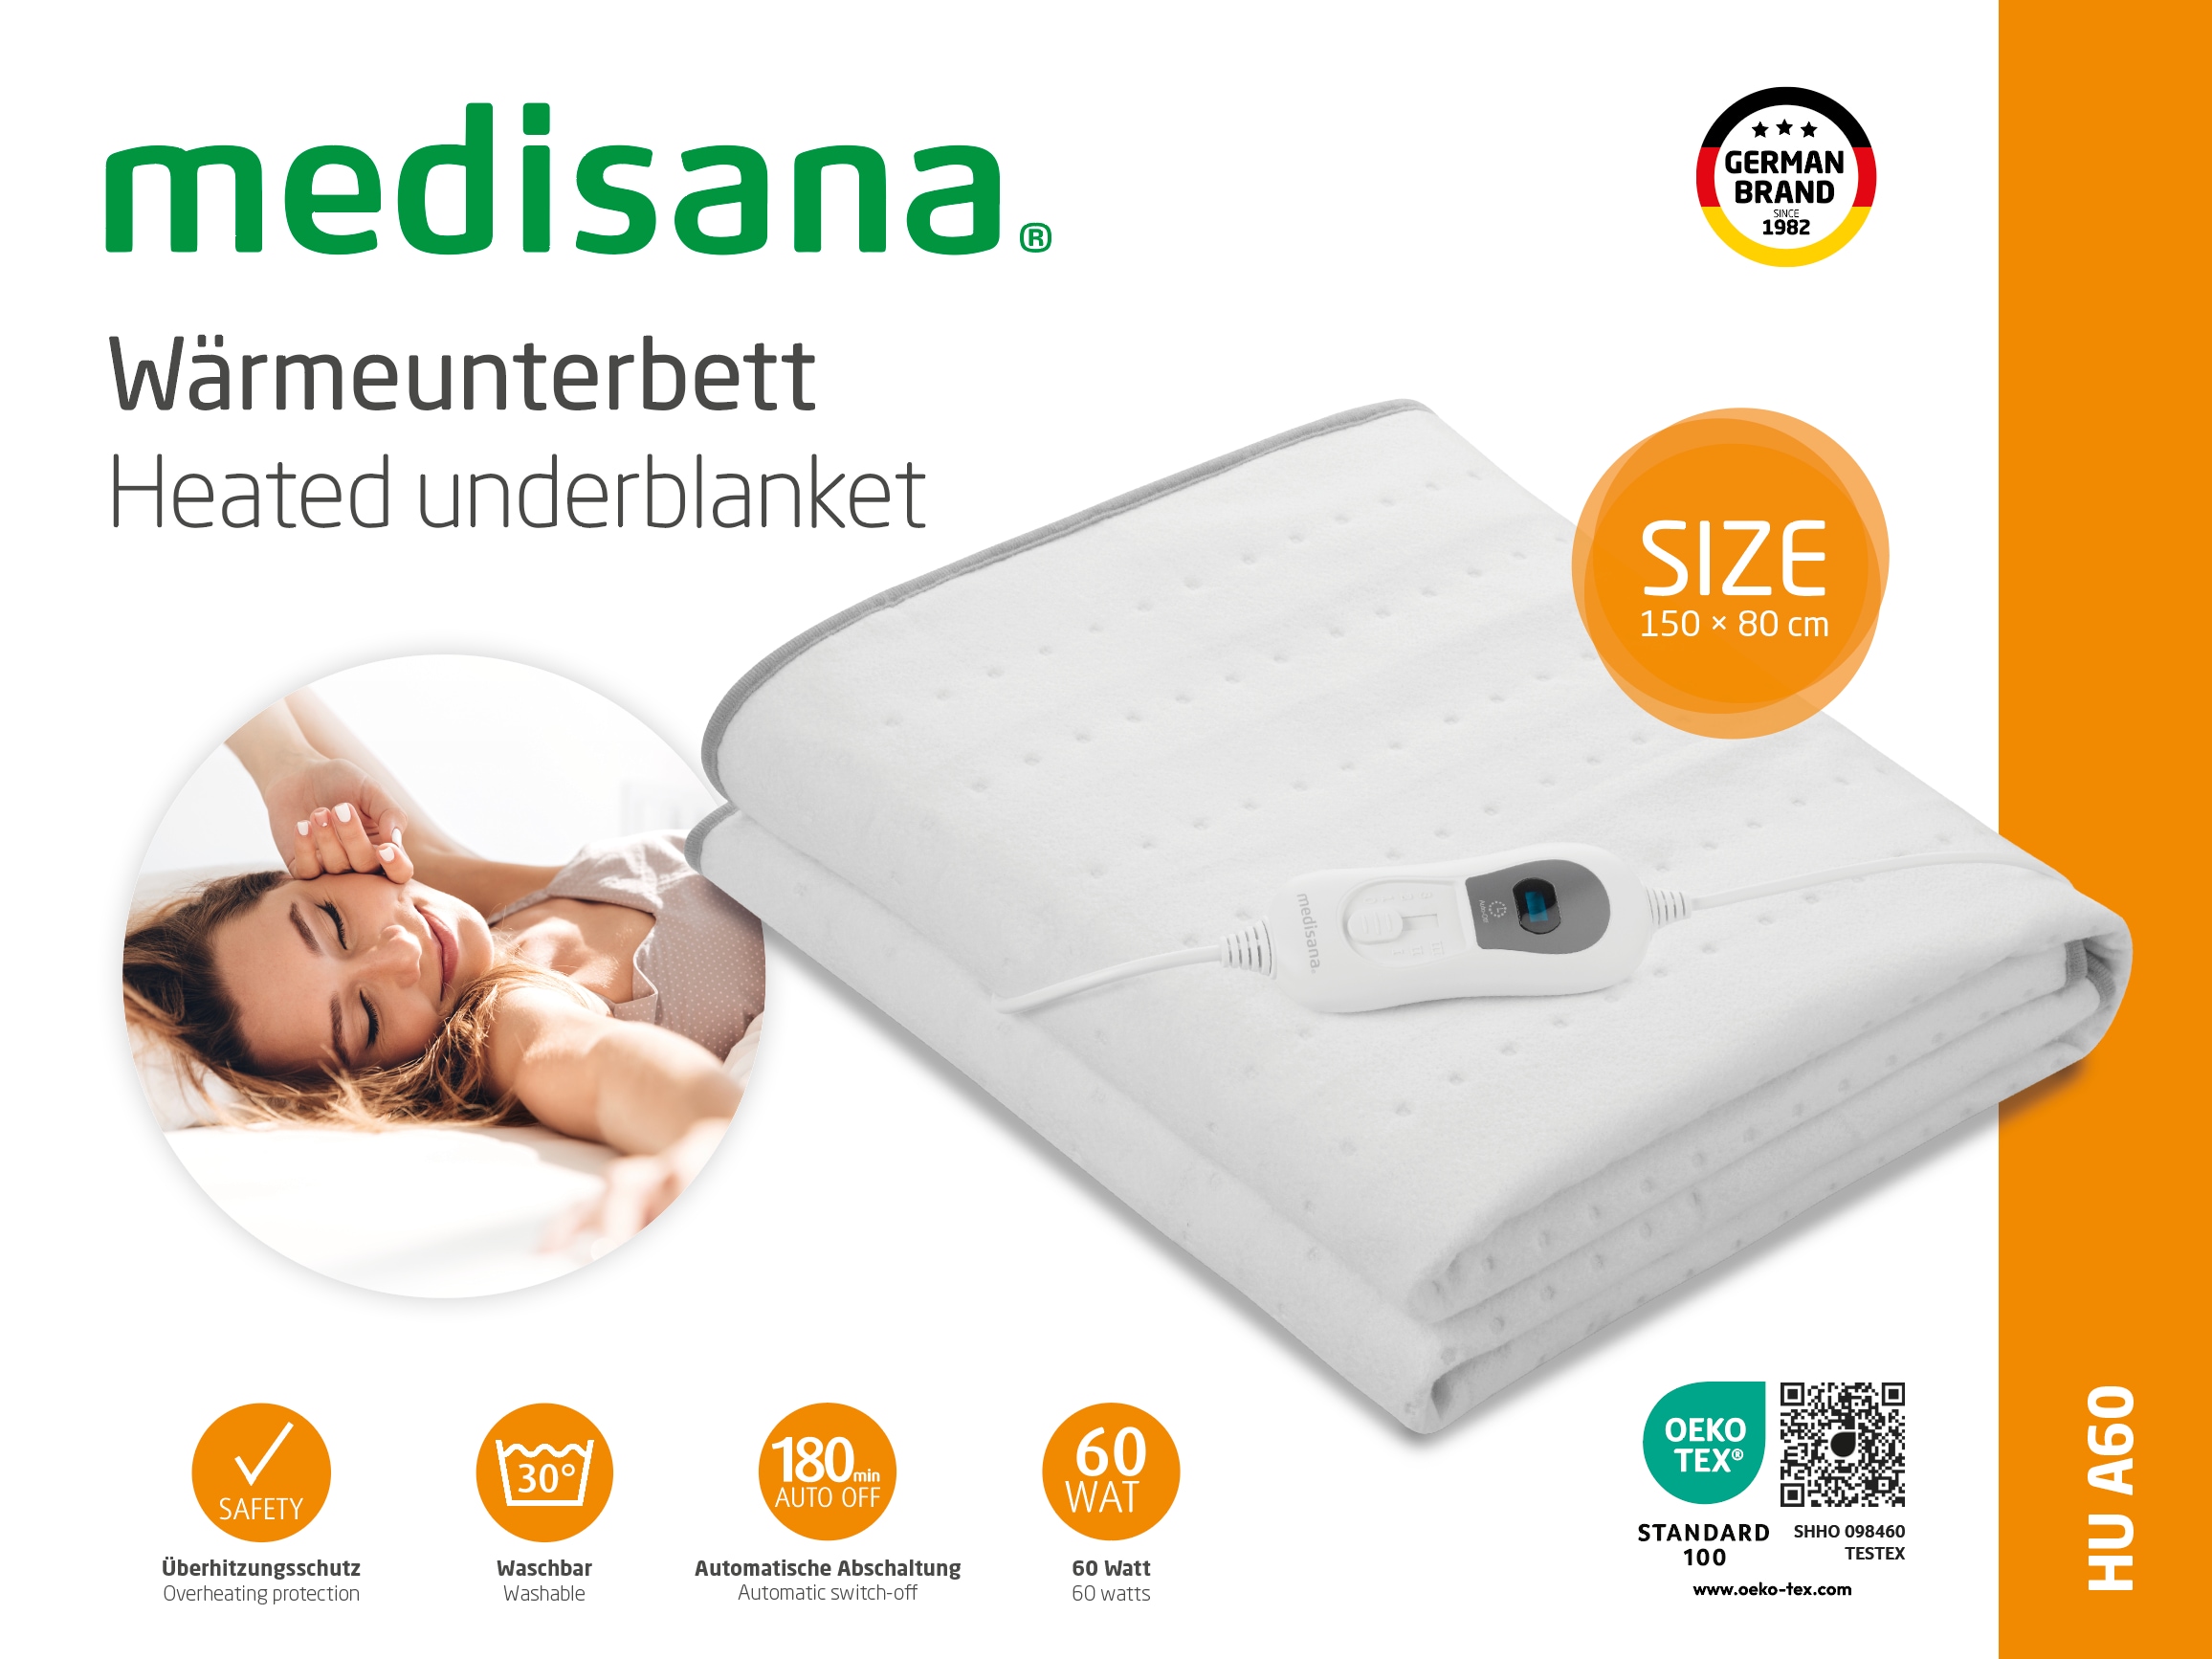 Medisana Wärmeunterbett HU 670 online kaufen bei Netto